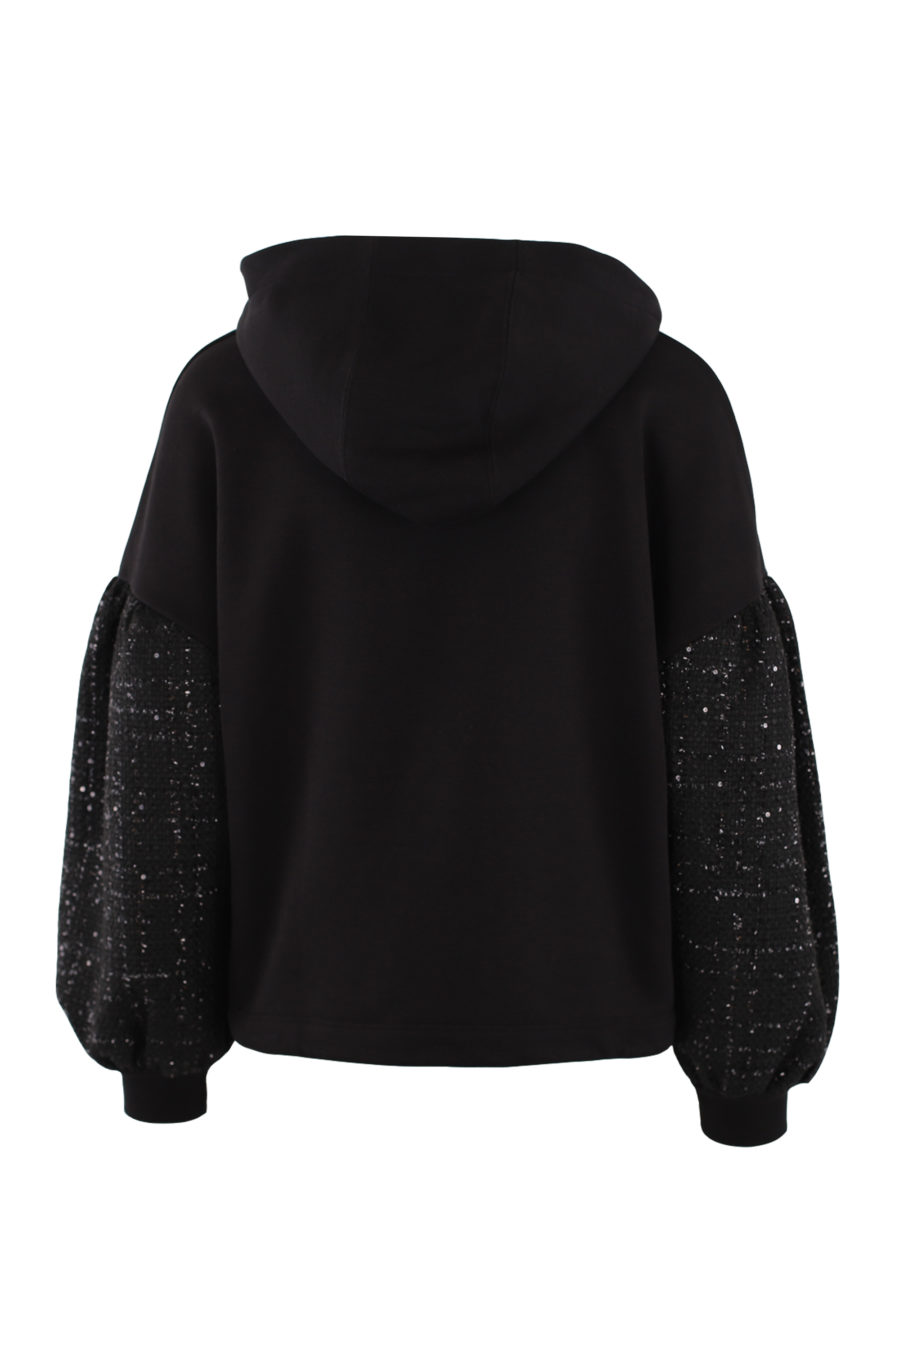 Black bouclé sweatshirt with hood - IMG 0428